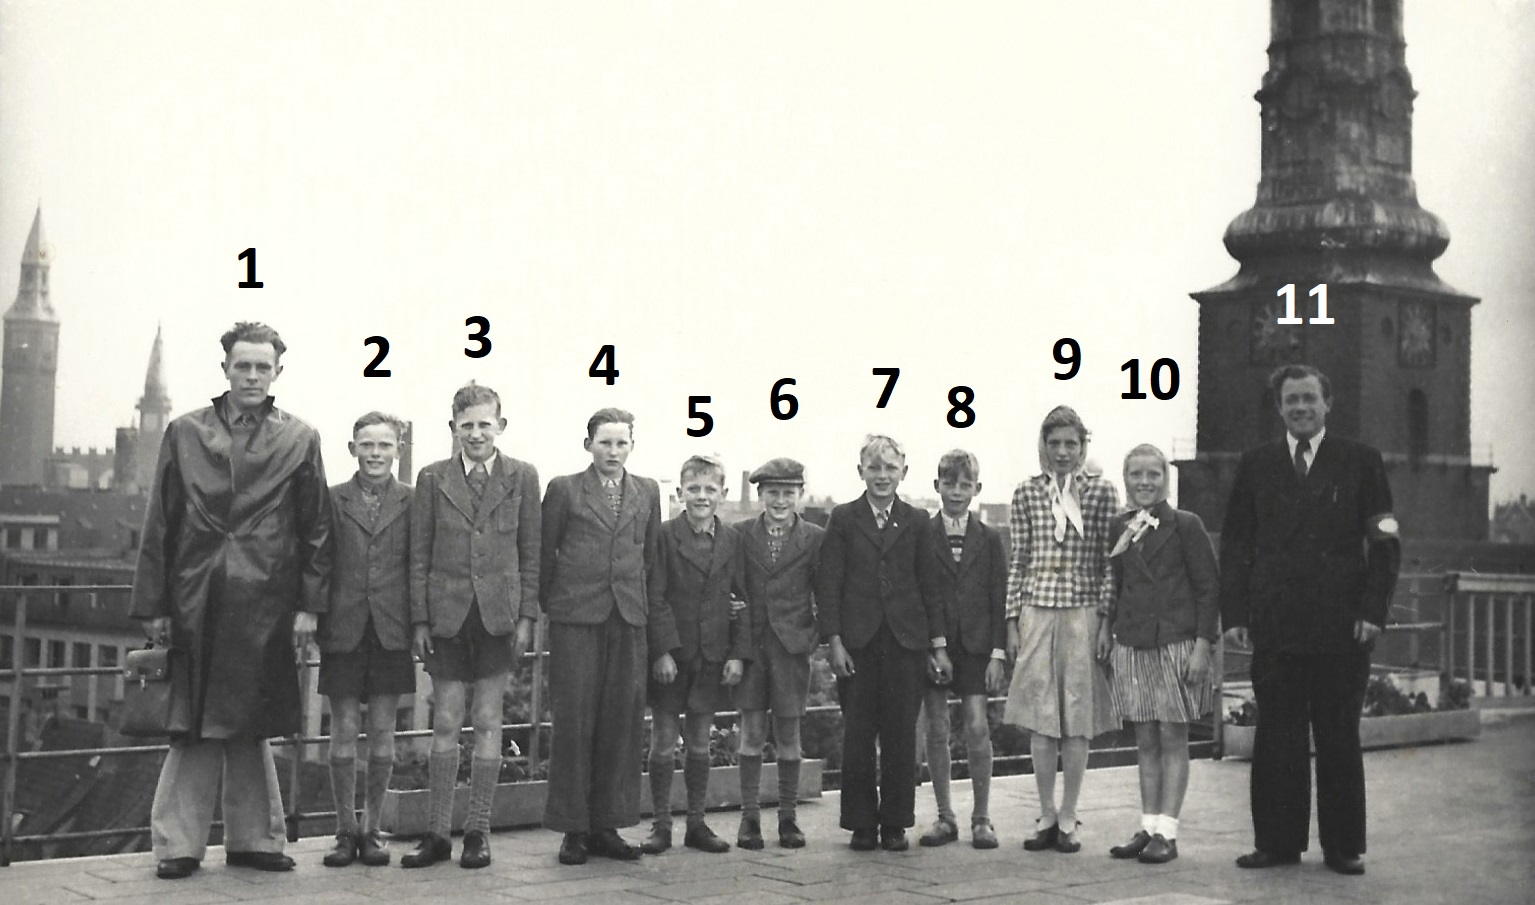 Elever fra Stråsø Skole på besøg i København omkring 1950. Lærer og elever var indkvarteret på 'Fregatten Jylland', og billedet herover er taget på taget af Daells Varehus. I baggrunden til venstre ses rådhustårnet, til højre Skt. Petri kirketårn. Klik på billedet for at se det i større format.